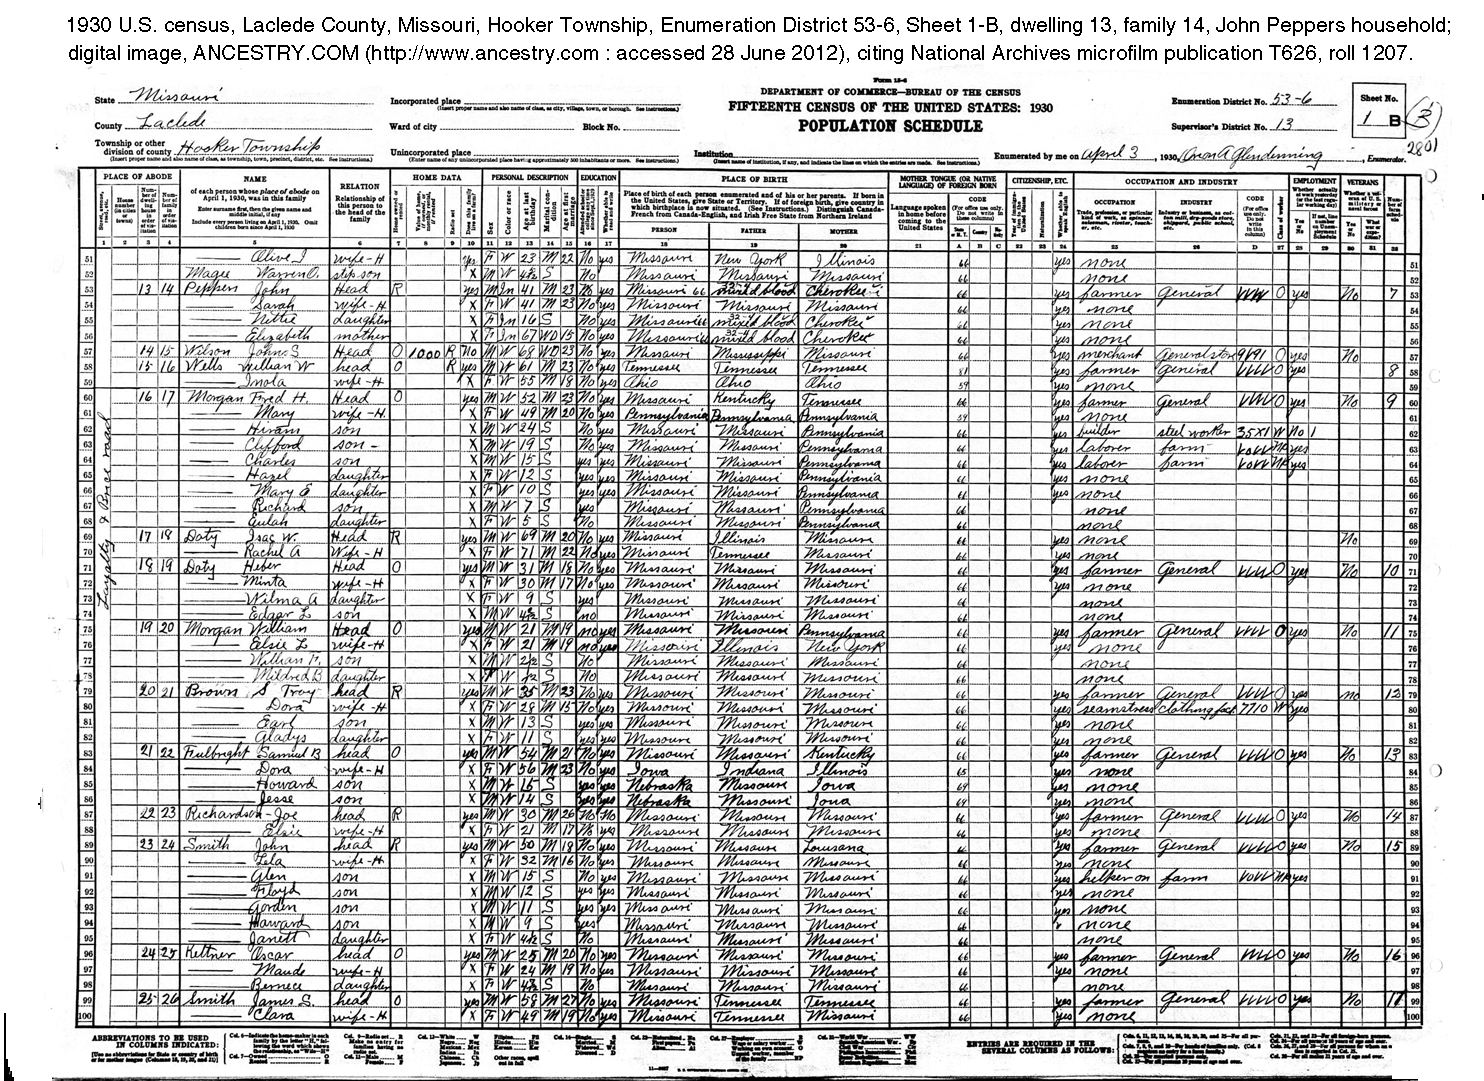 1930 census Pepper household